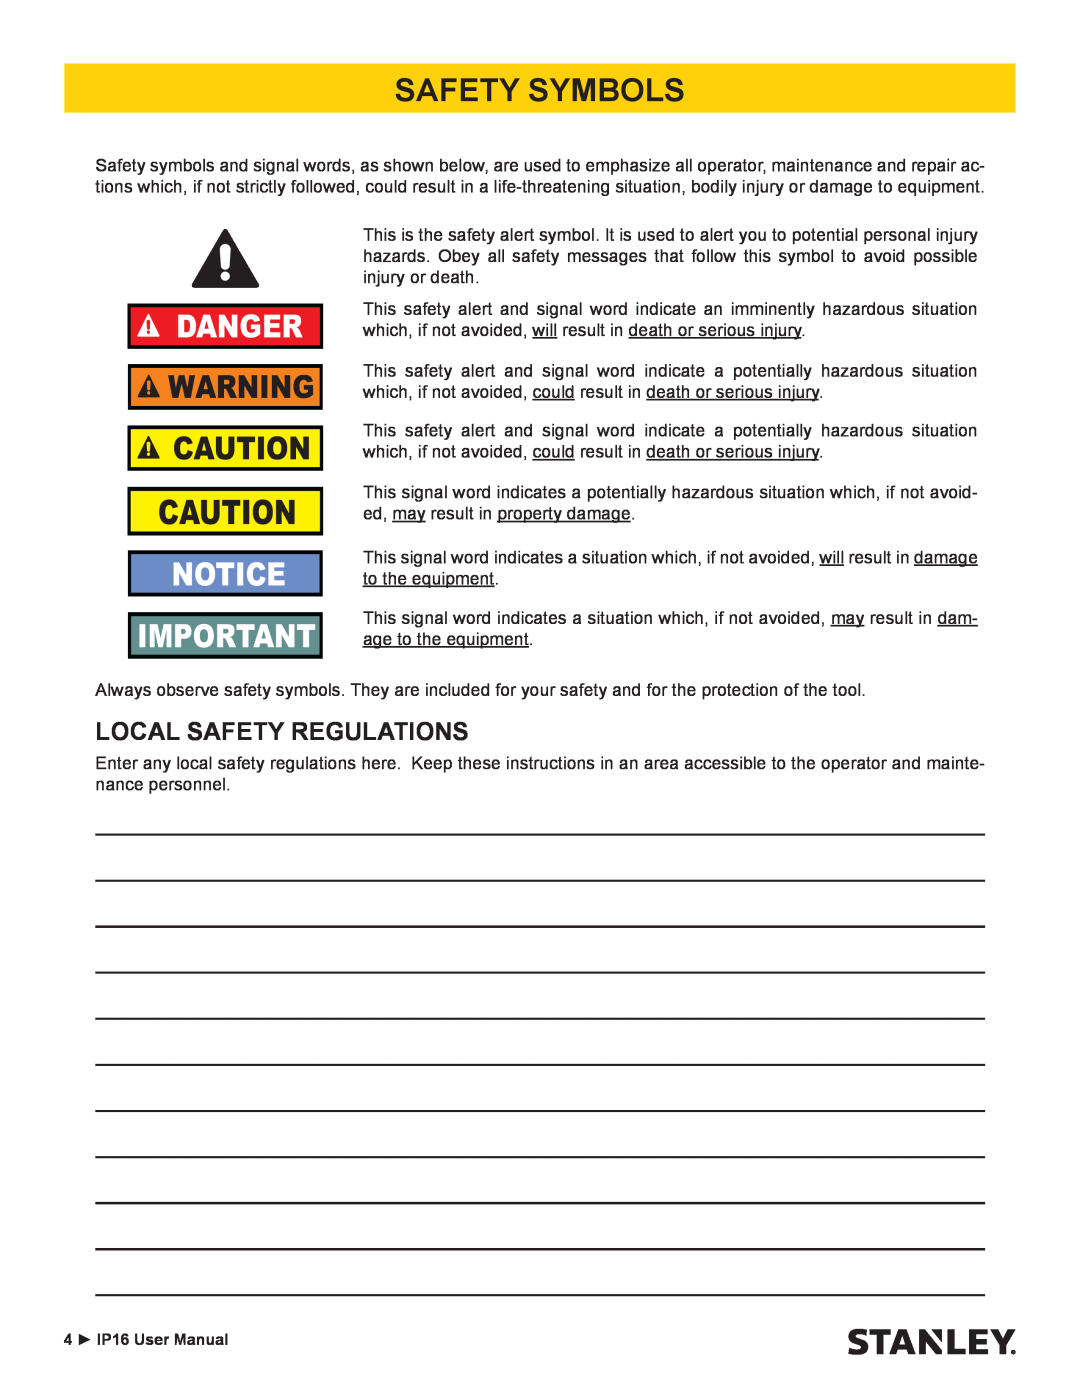 Stanley Black & Decker IP16 user manual Safety Symbols, Local Safety Regulations, Danger 